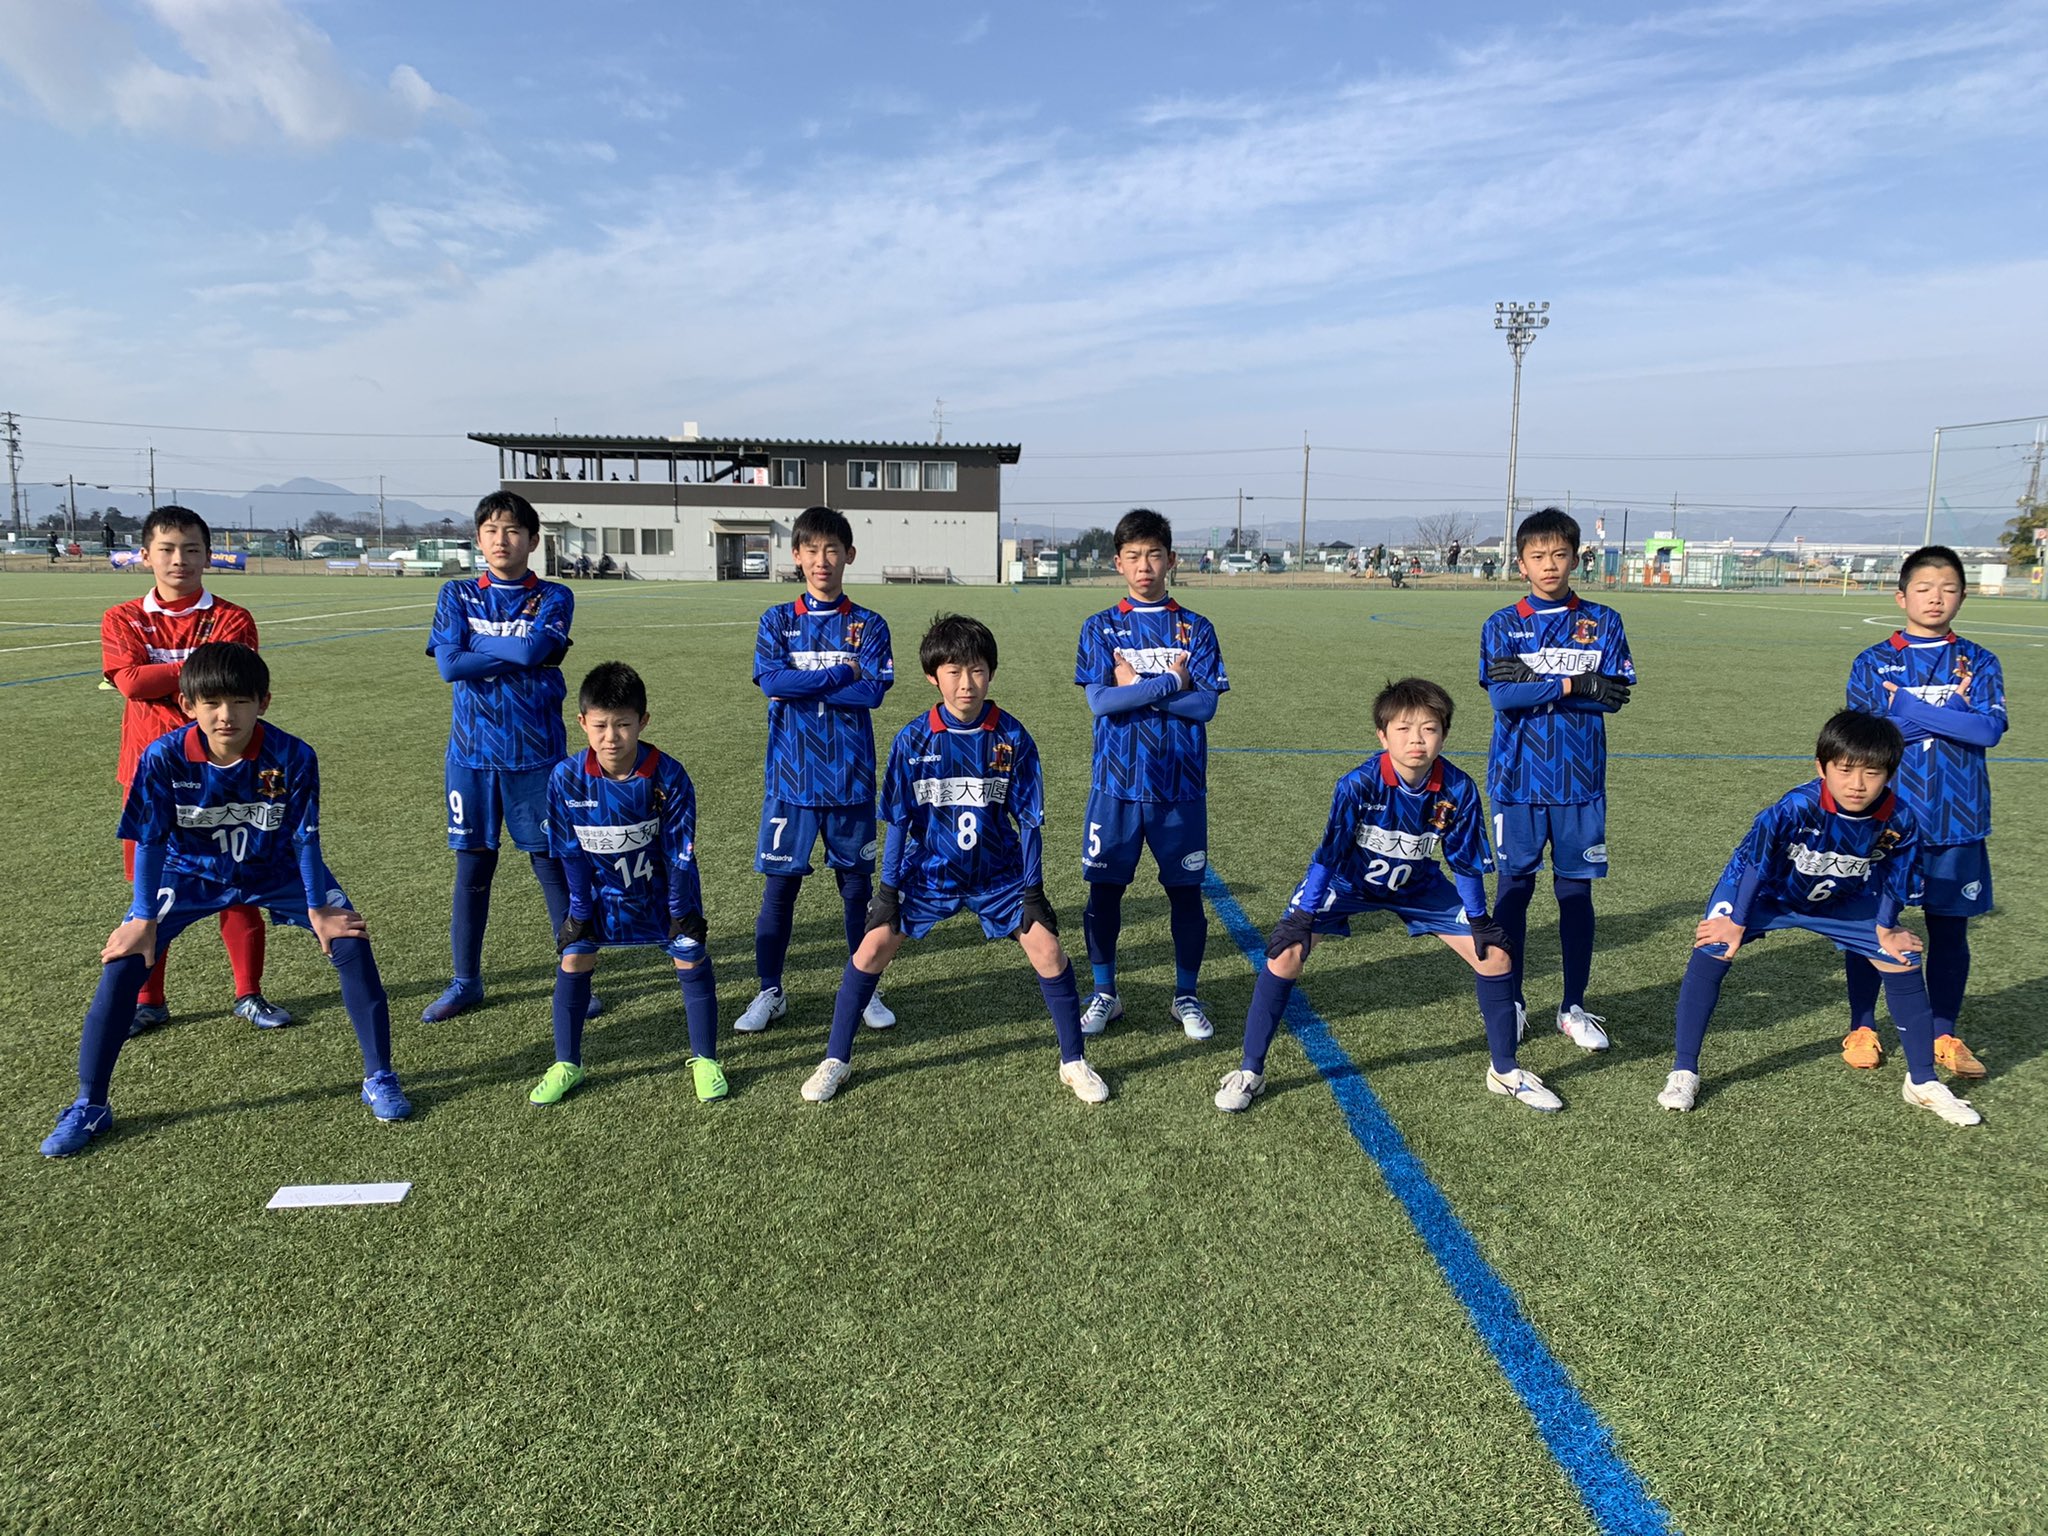 年度 Nfaサッカーリーグ U 13 奈良県 最終成績掲載 ジュニアサッカーnews